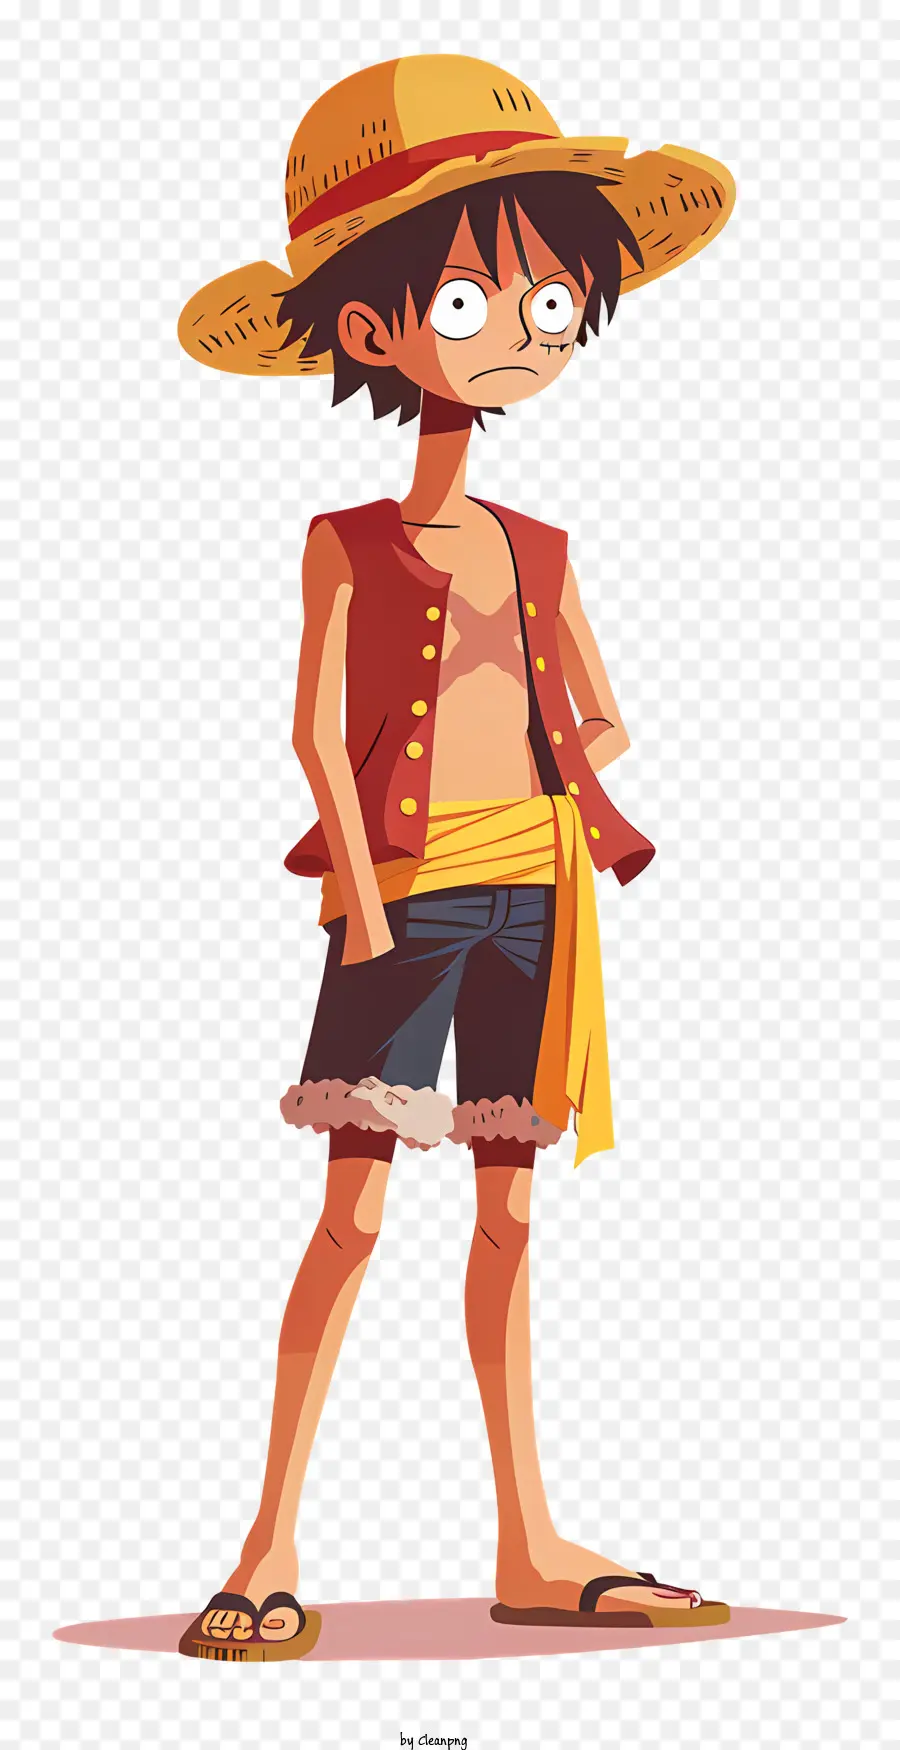 một mảnh nhân vật hoạt hình luffy áo sơ mi màu vàng áo sơ mi màu đỏ - Nhân vật hoạt hình hạnh phúc với vòng tay khoanh